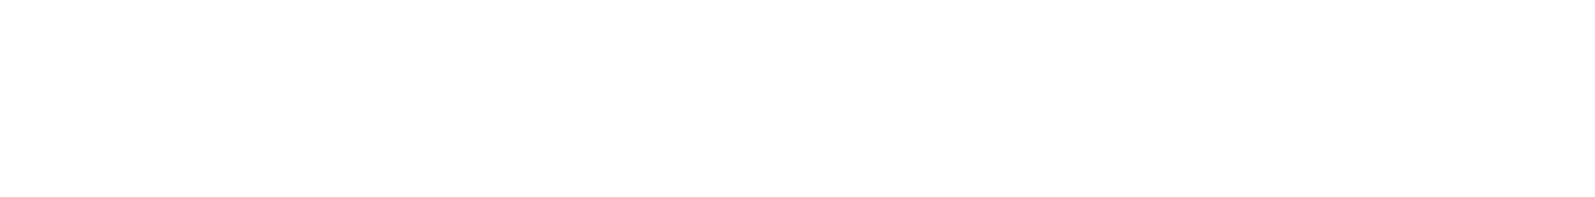 Cognex logo large for dark backgrounds (transparent PNG)